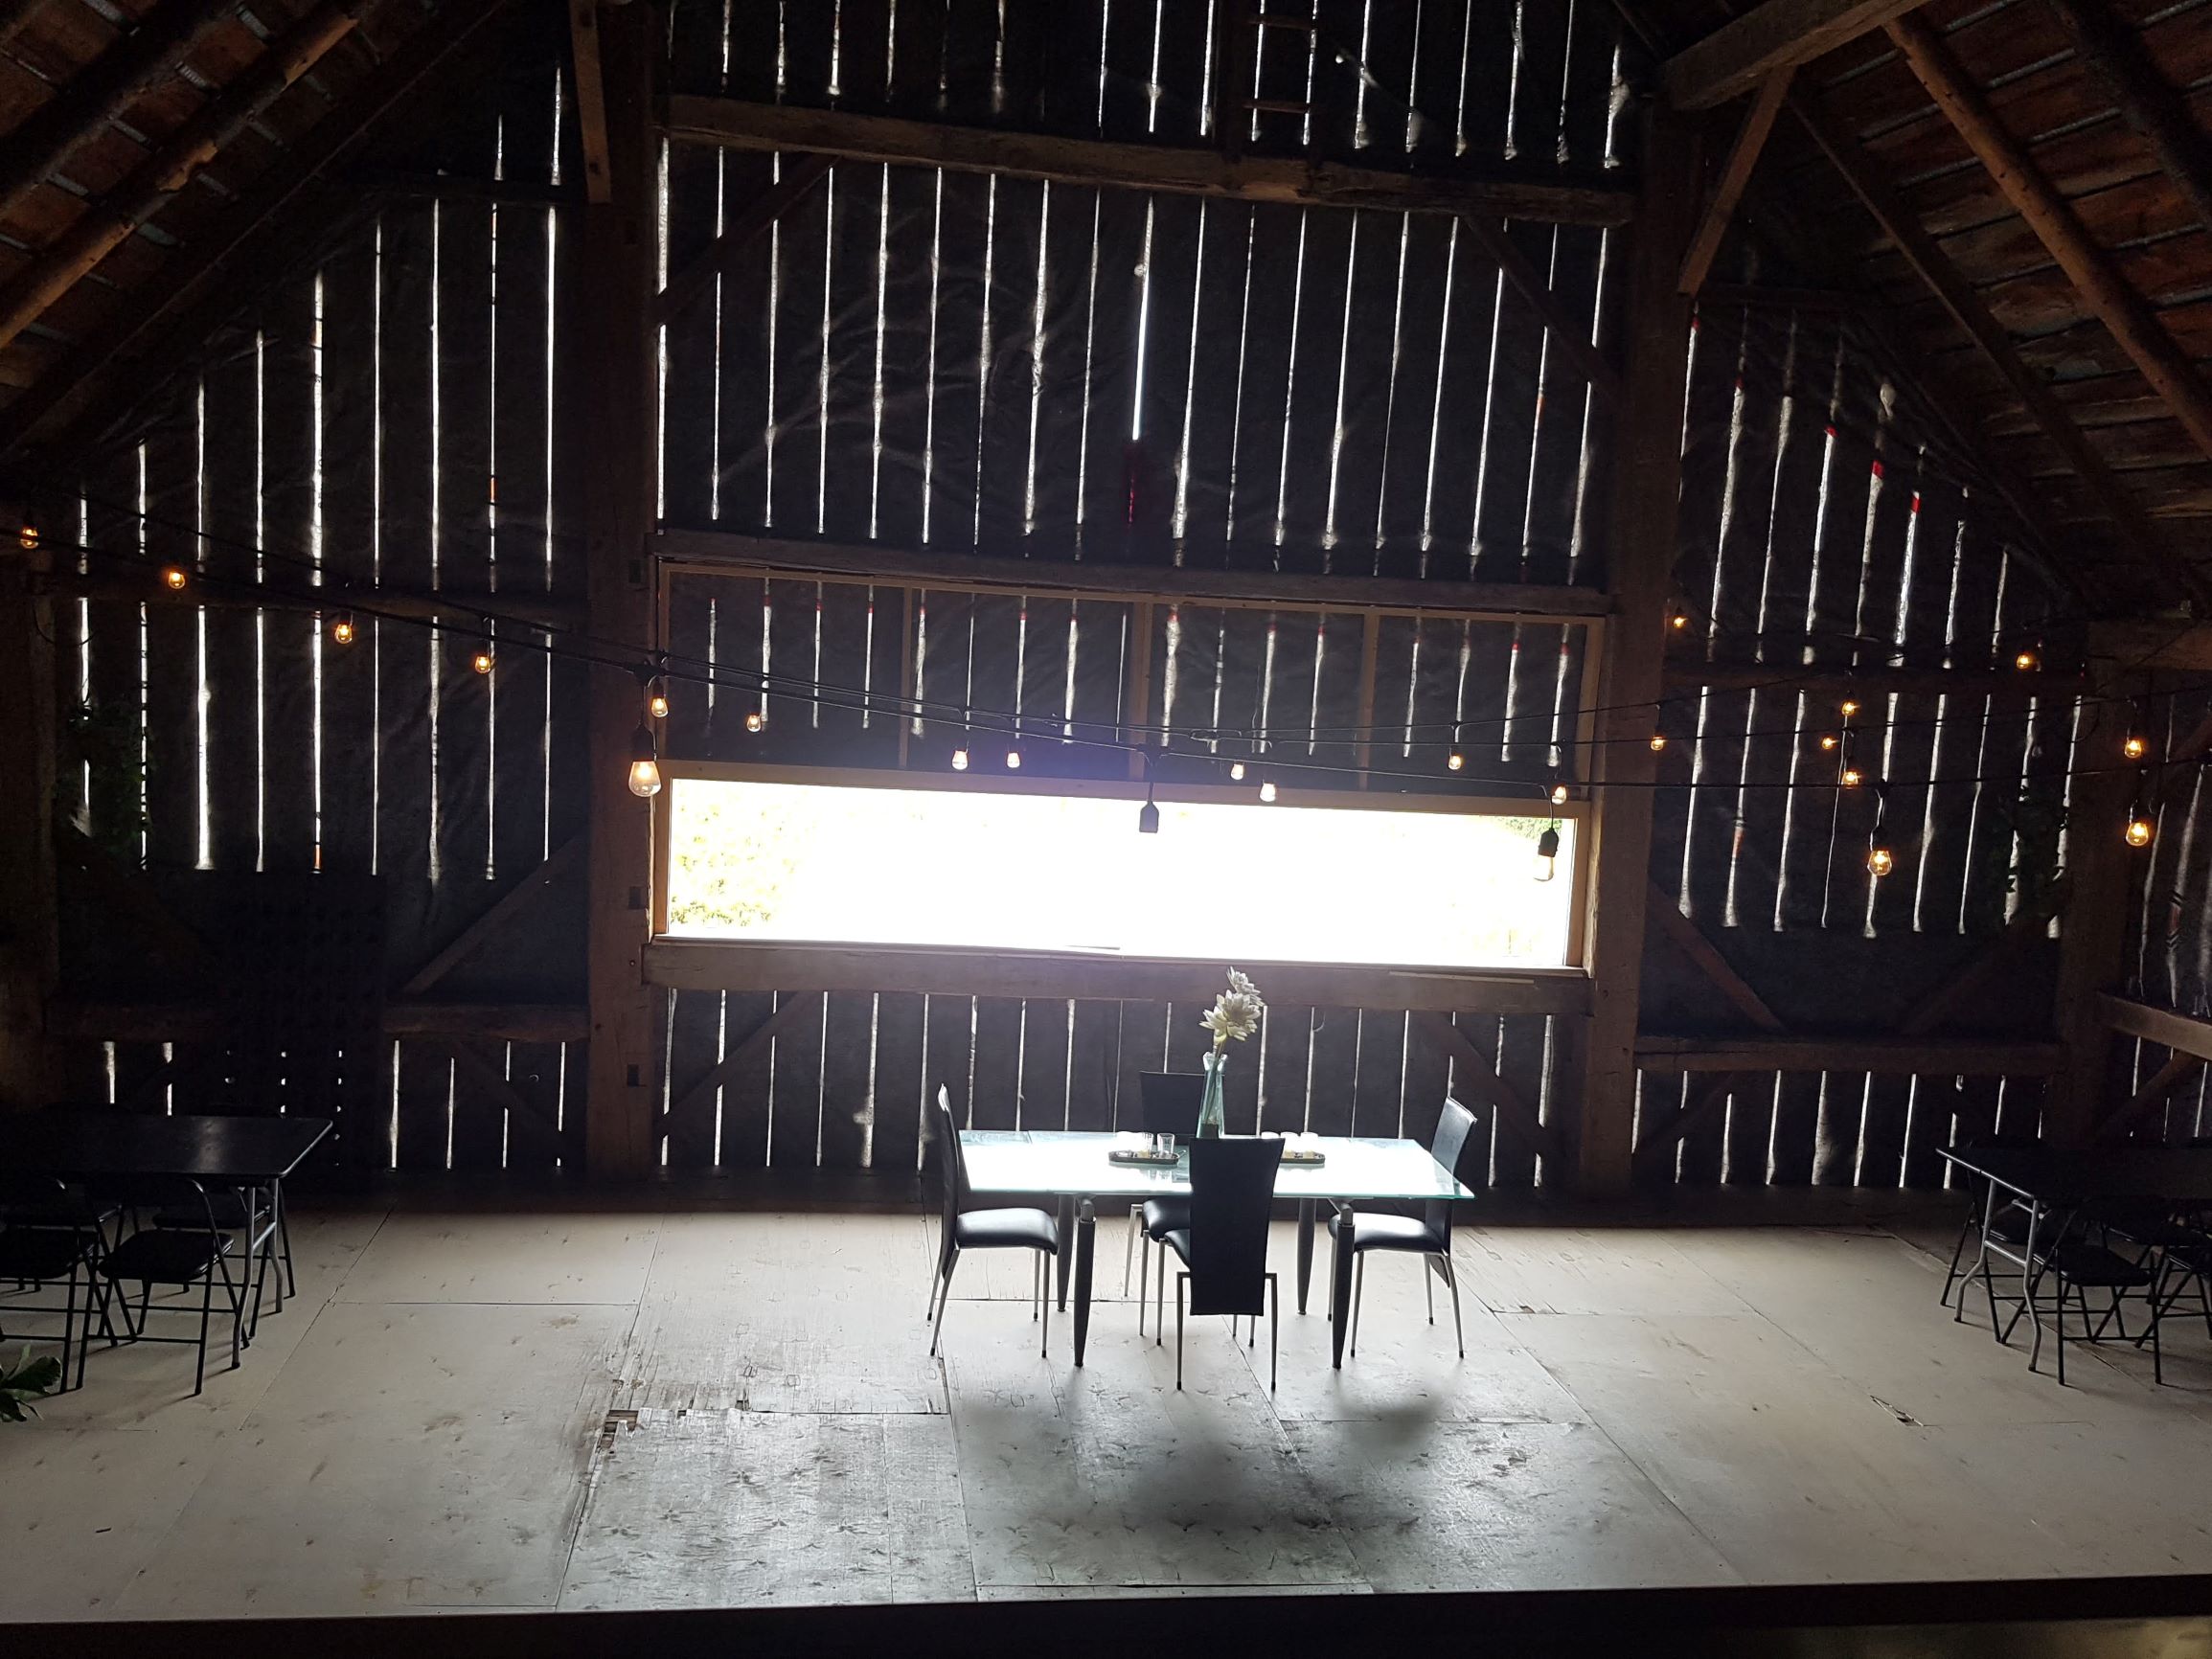 Big Barn Interior at The Old Third